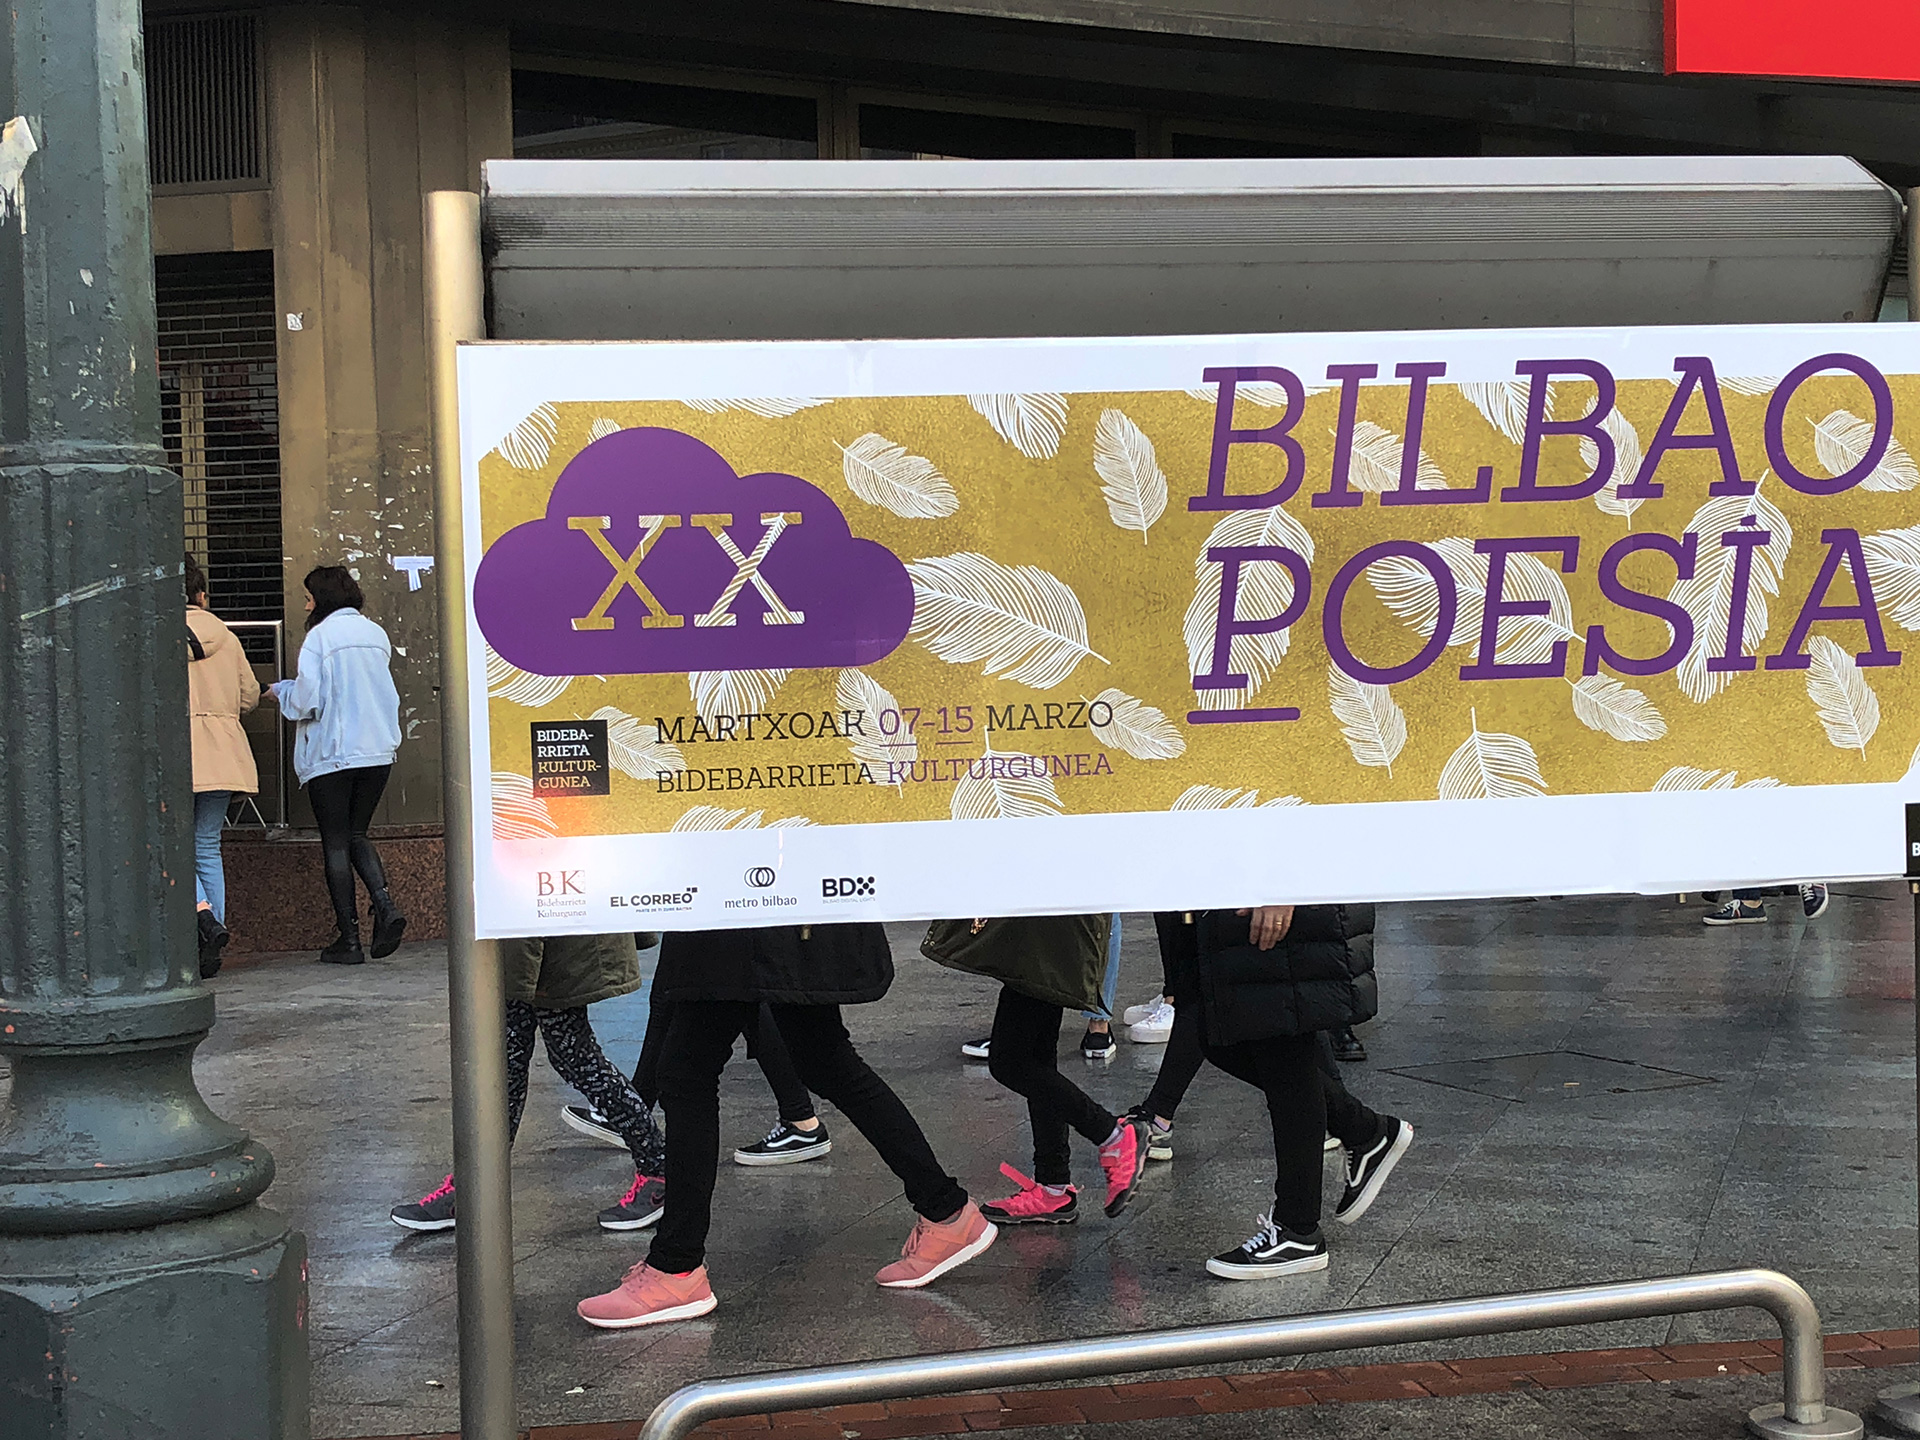 Bilbao poesía Cartel Publicidad calle Bilbao